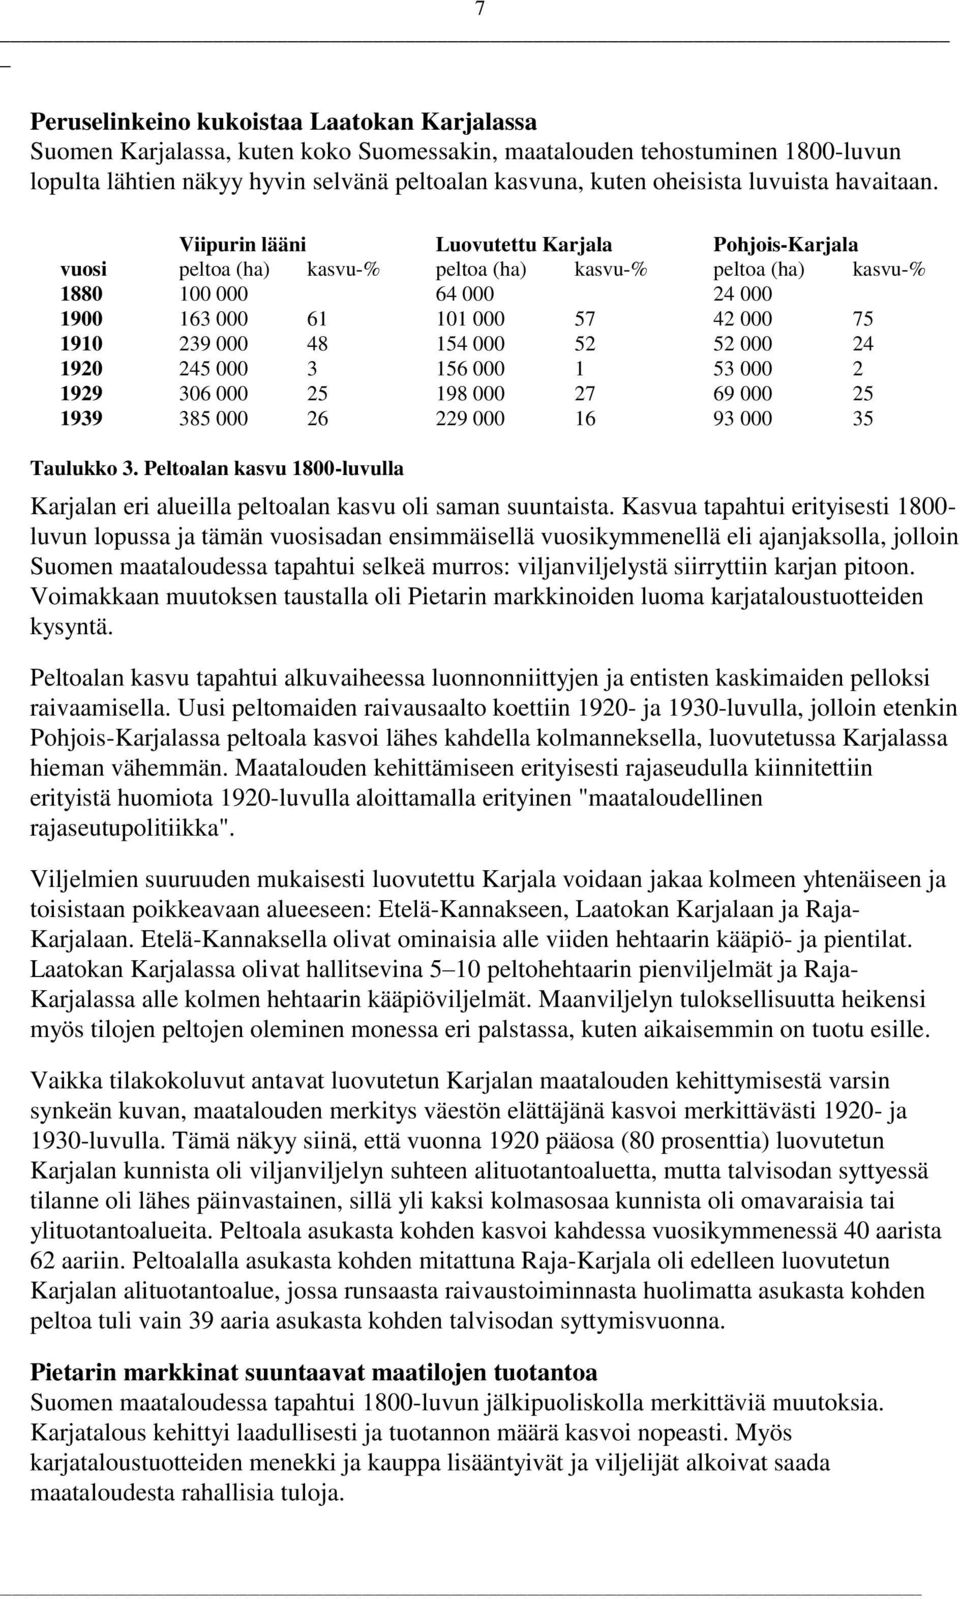 Viipurin lääni Luovutettu Karjala Pohjois-Karjala vuosi peltoa (ha) kasvu-% peltoa (ha) kasvu-% peltoa (ha) kasvu-% 1880 100 000 64 000 24 000 1900 163 000 61 101 000 57 42 000 75 1910 239 000 48 154